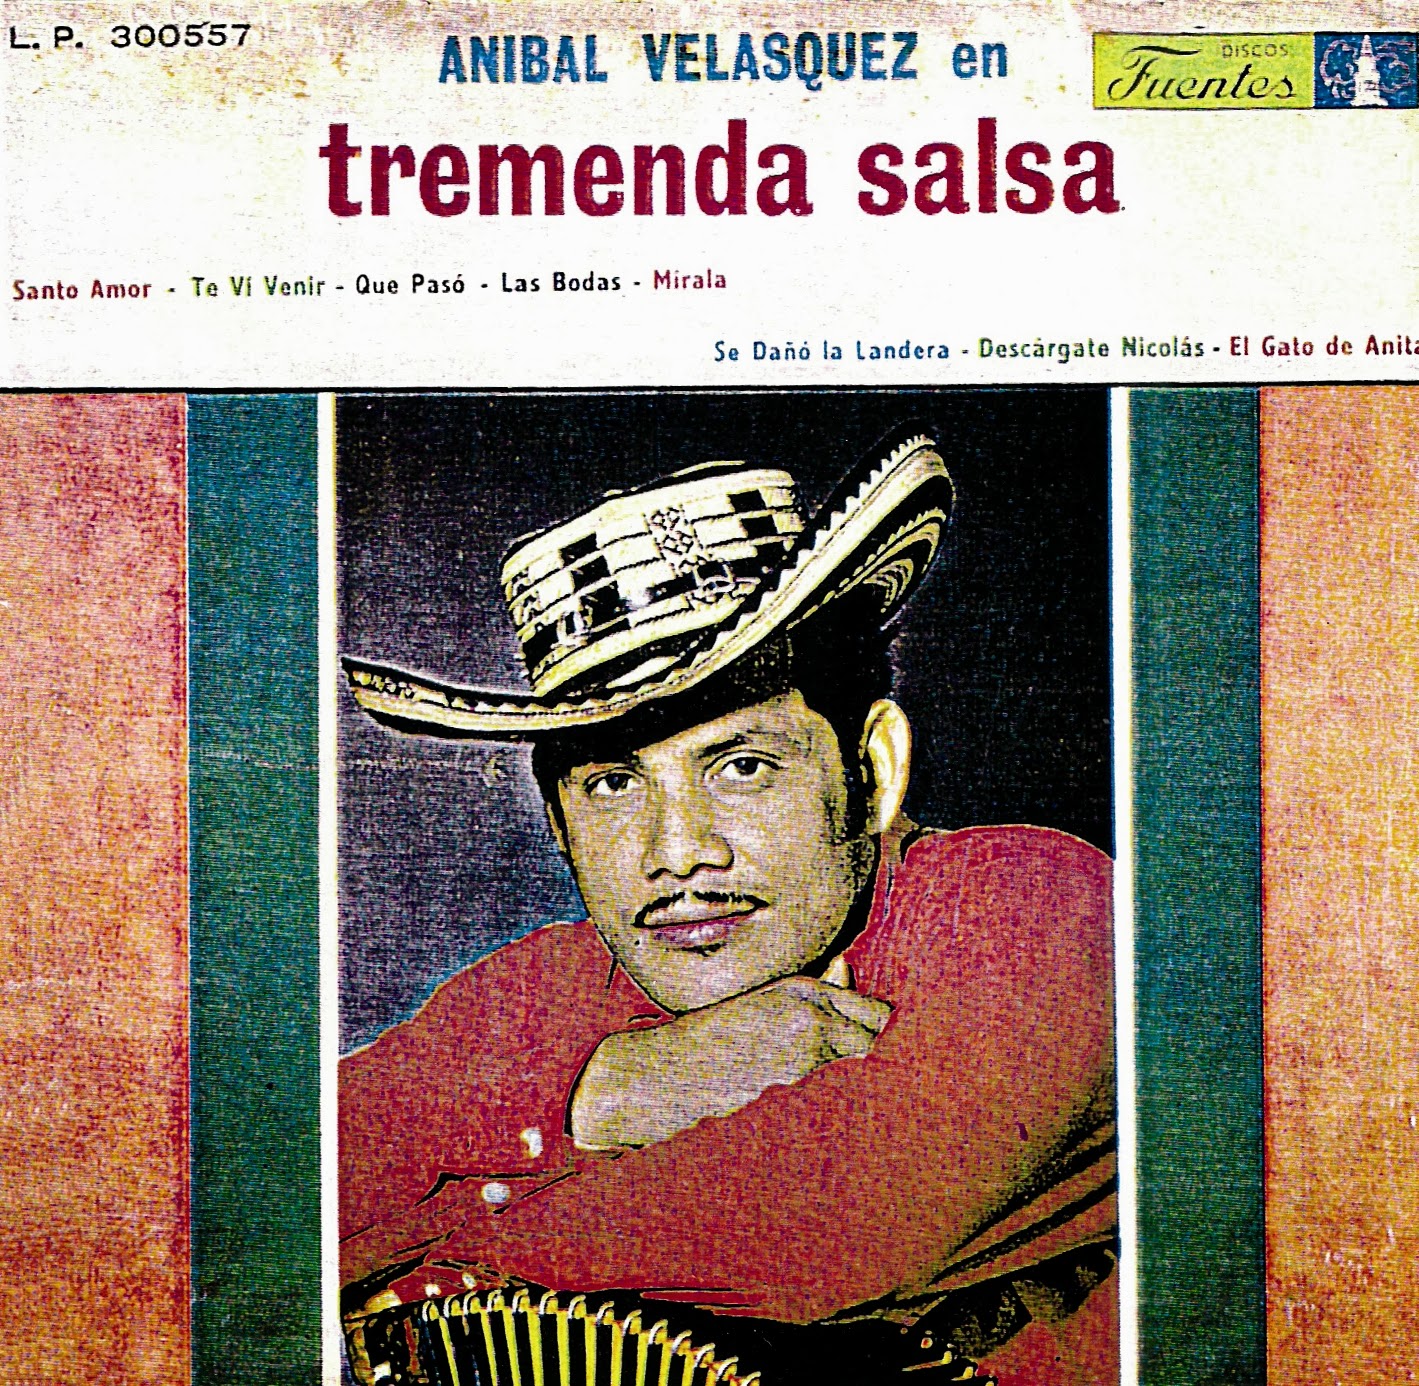  ANIBAL VELASQUEZ- TREMENDA SALSA    ANIBAL+VELASQUEZ+-+tremenda+salsa+-+F